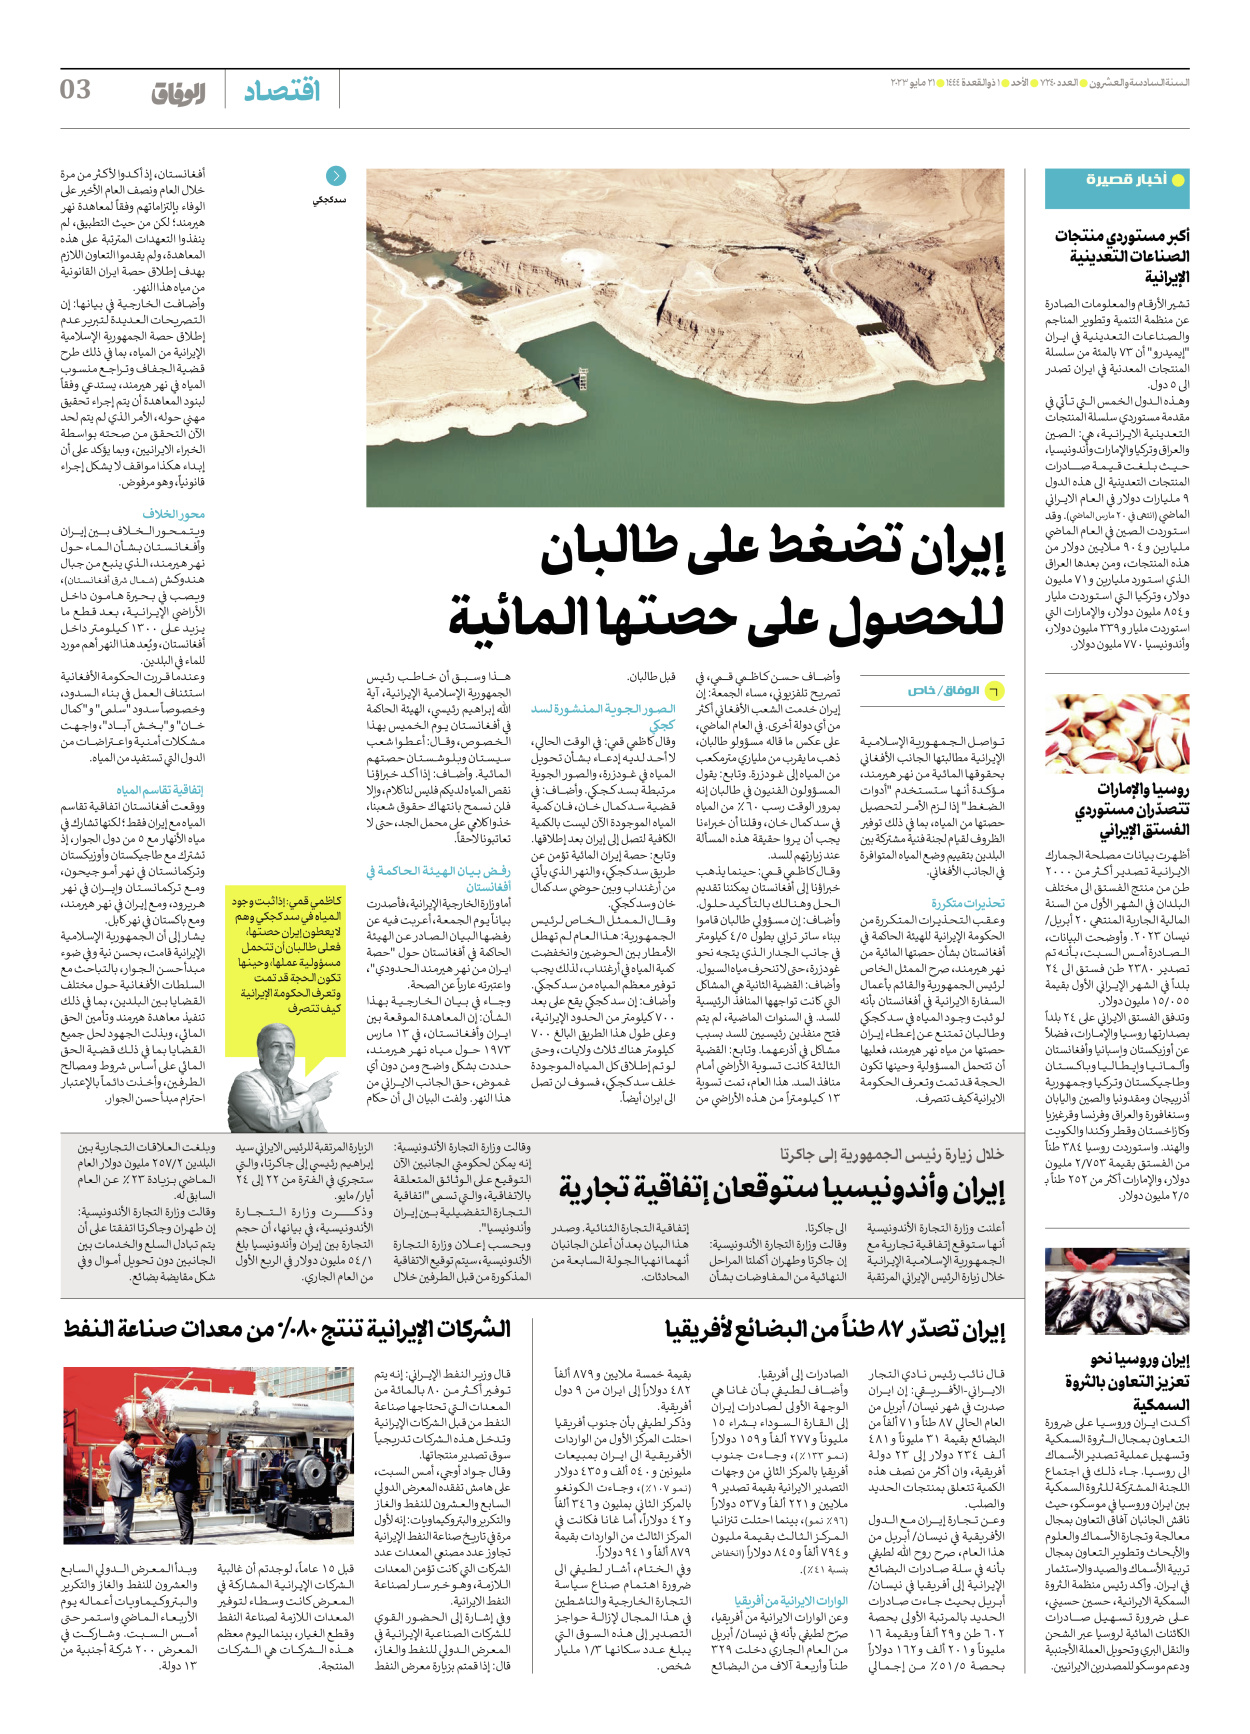 صحیفة ایران الدولیة الوفاق - العدد سبعة آلاف ومائتان وأربعون - ٢١ مايو ٢٠٢٣ - الصفحة ۳